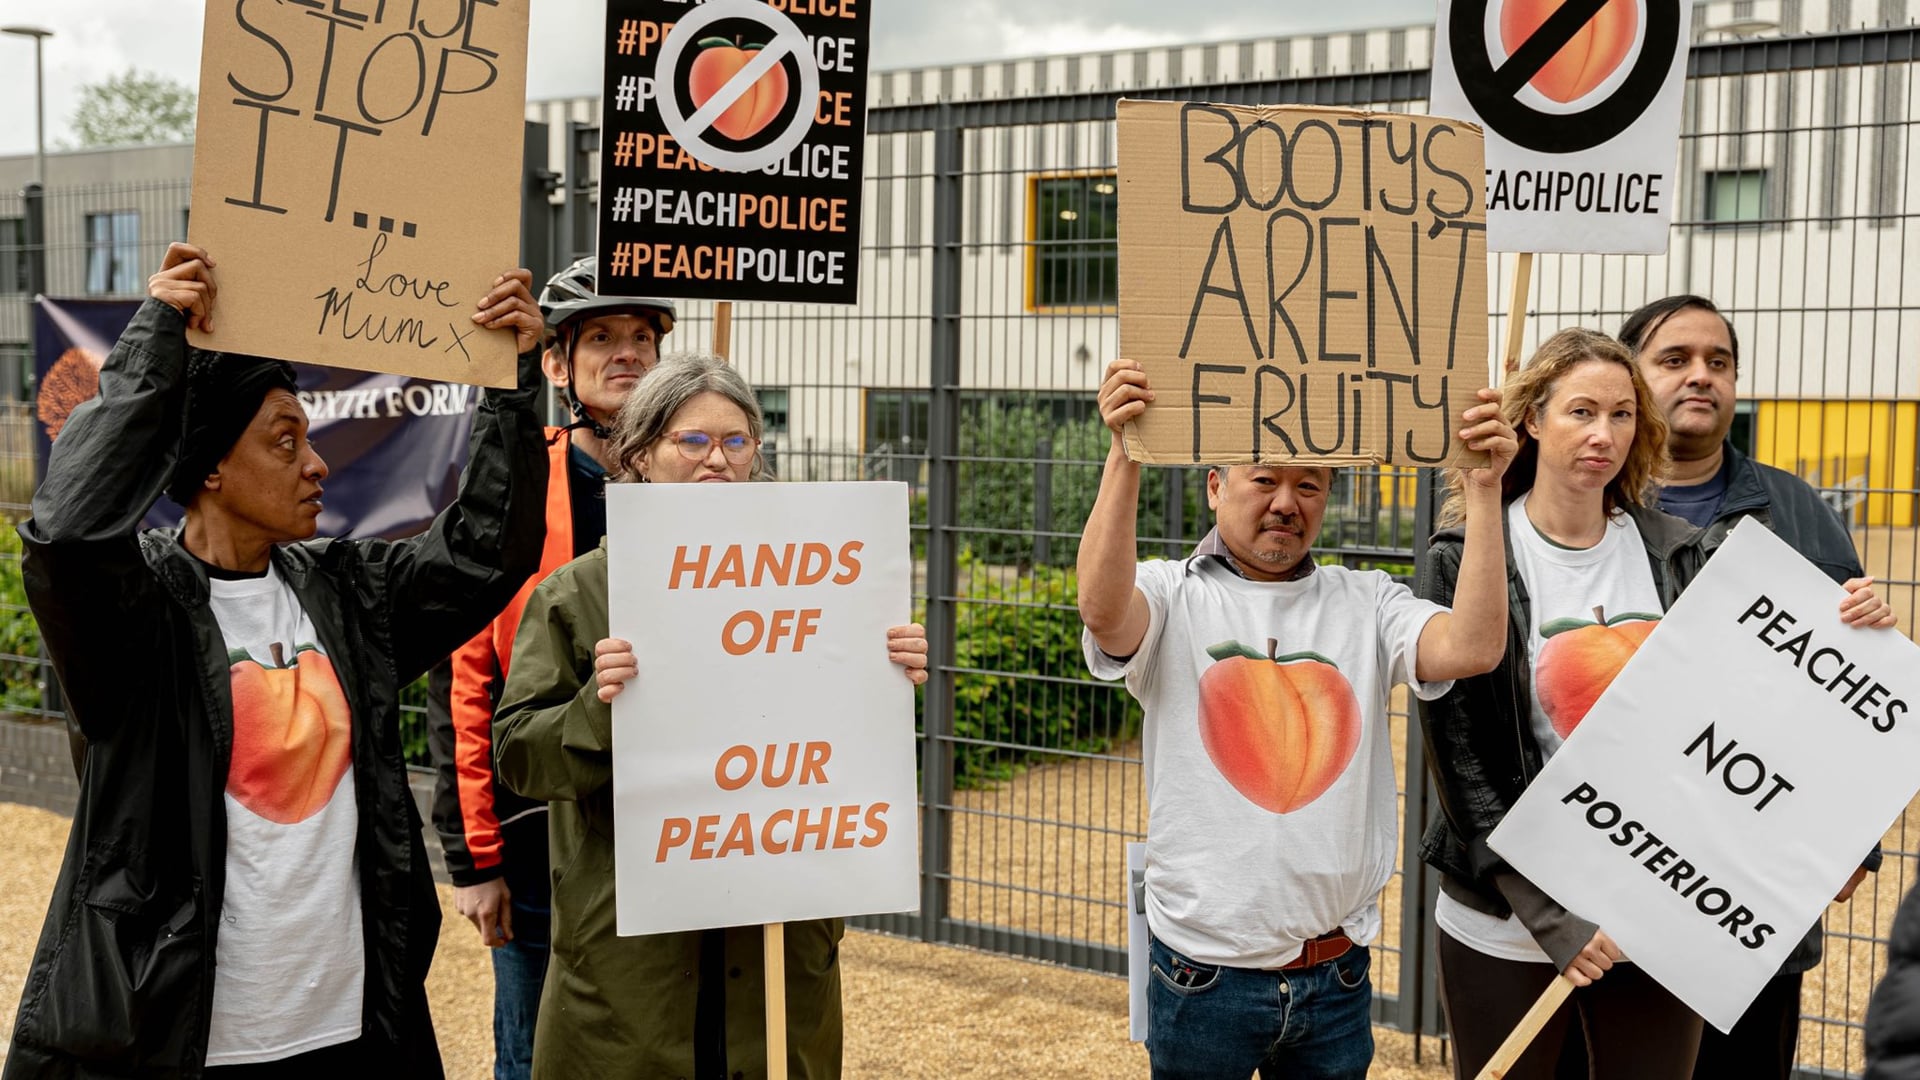 Peach Police